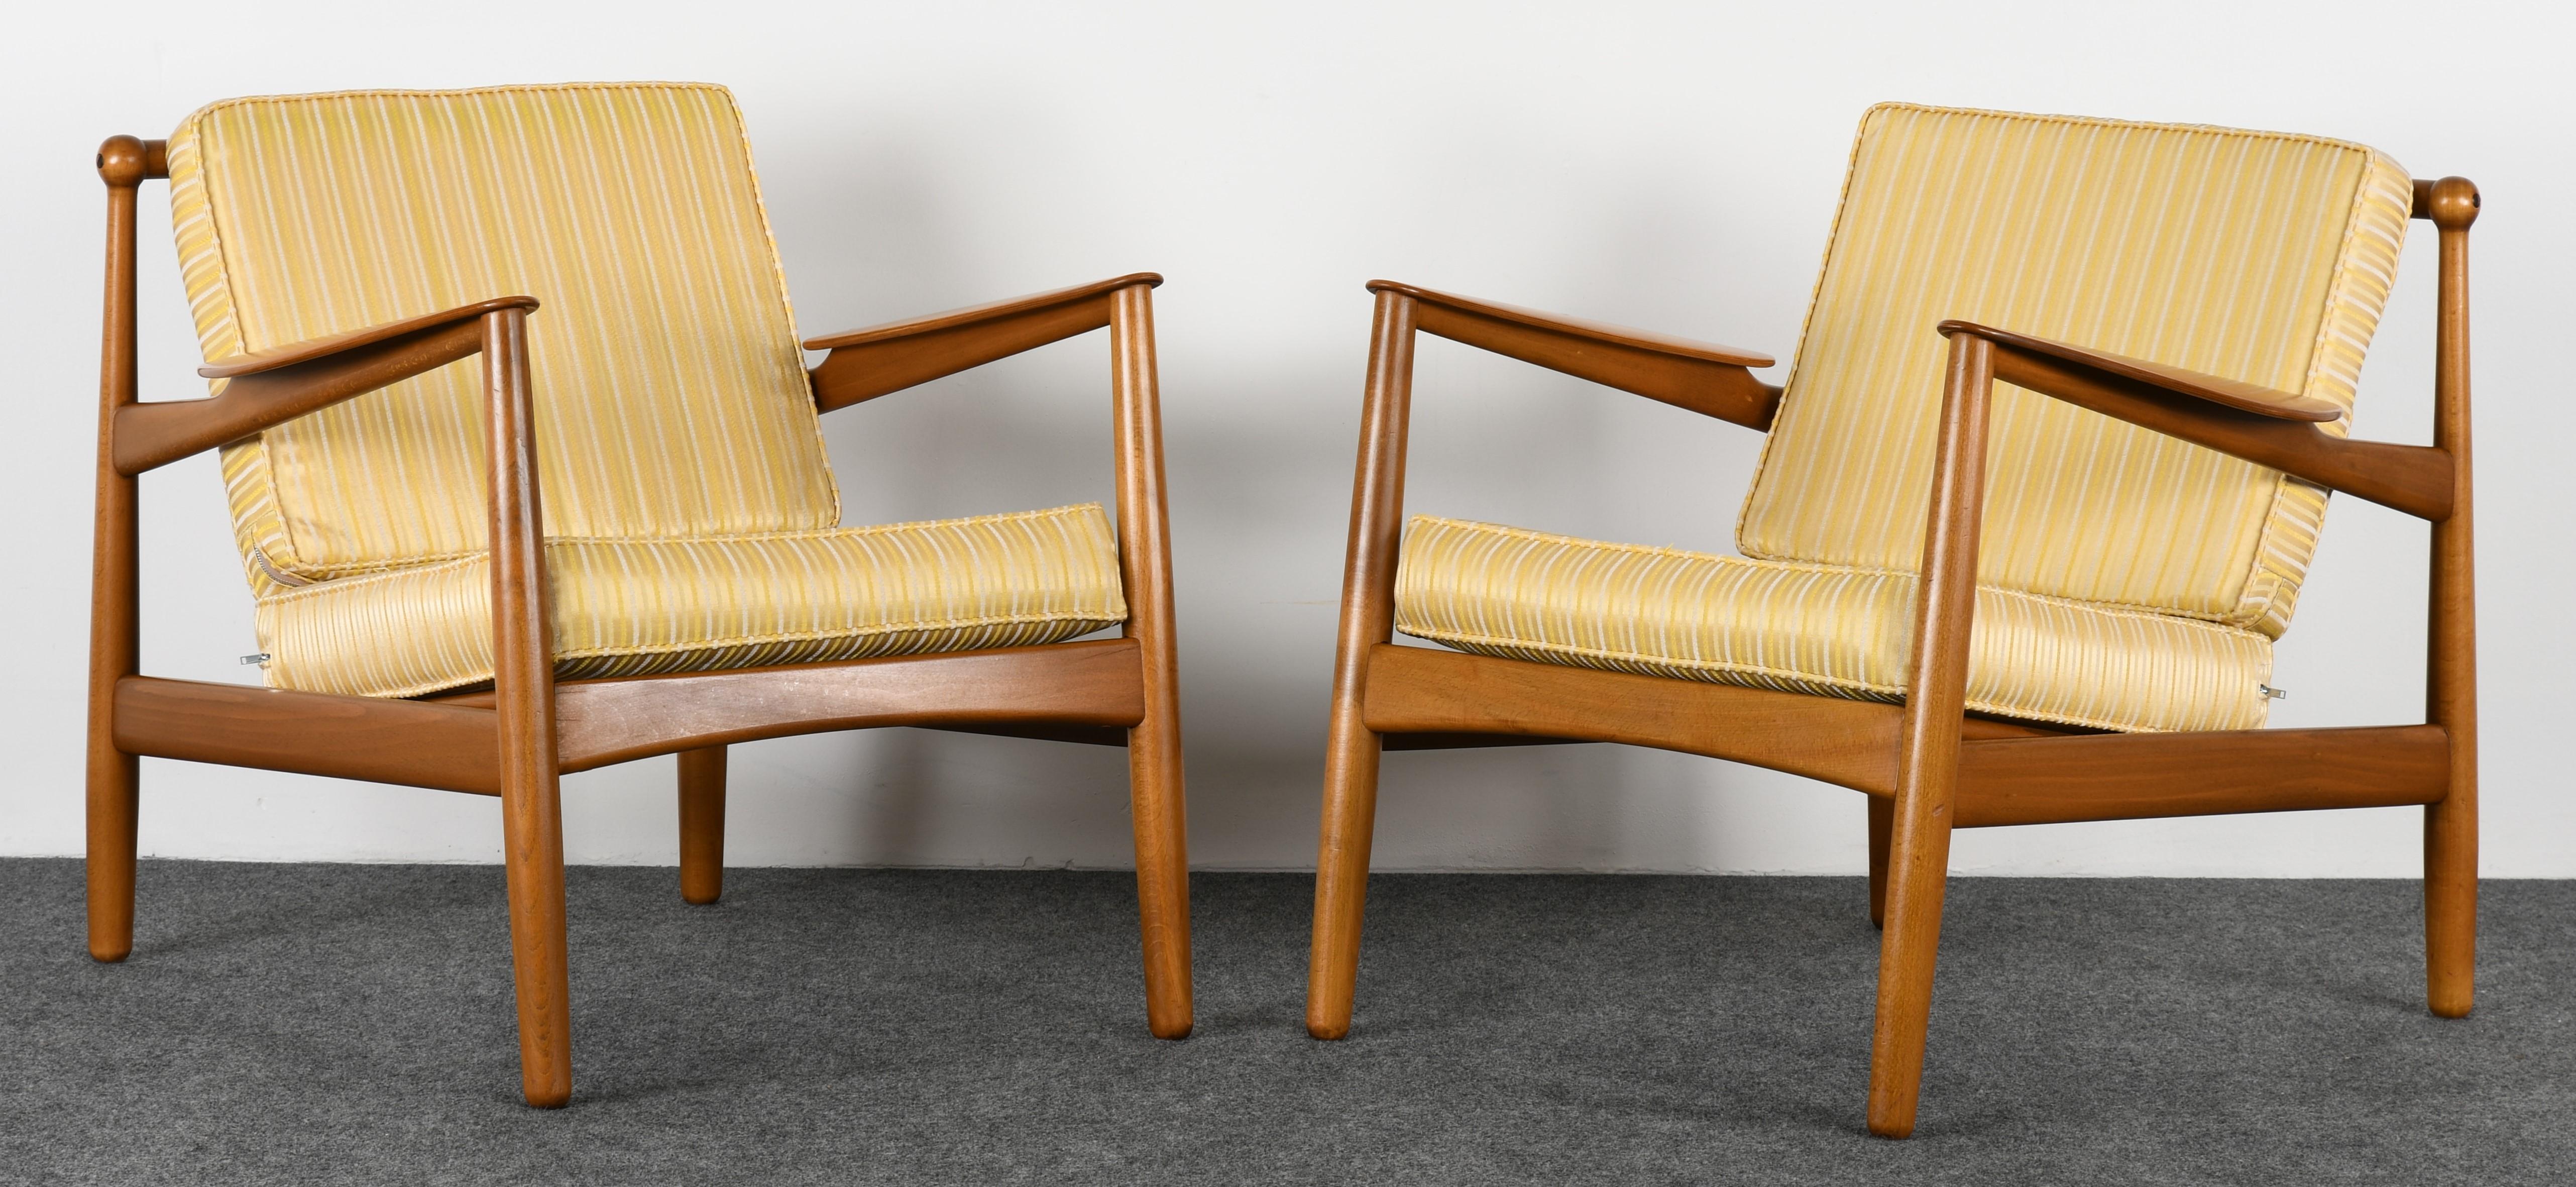 Paar dänische moderne Stühle von P. Jeppesen:: 1955 (Skandinavische Moderne)